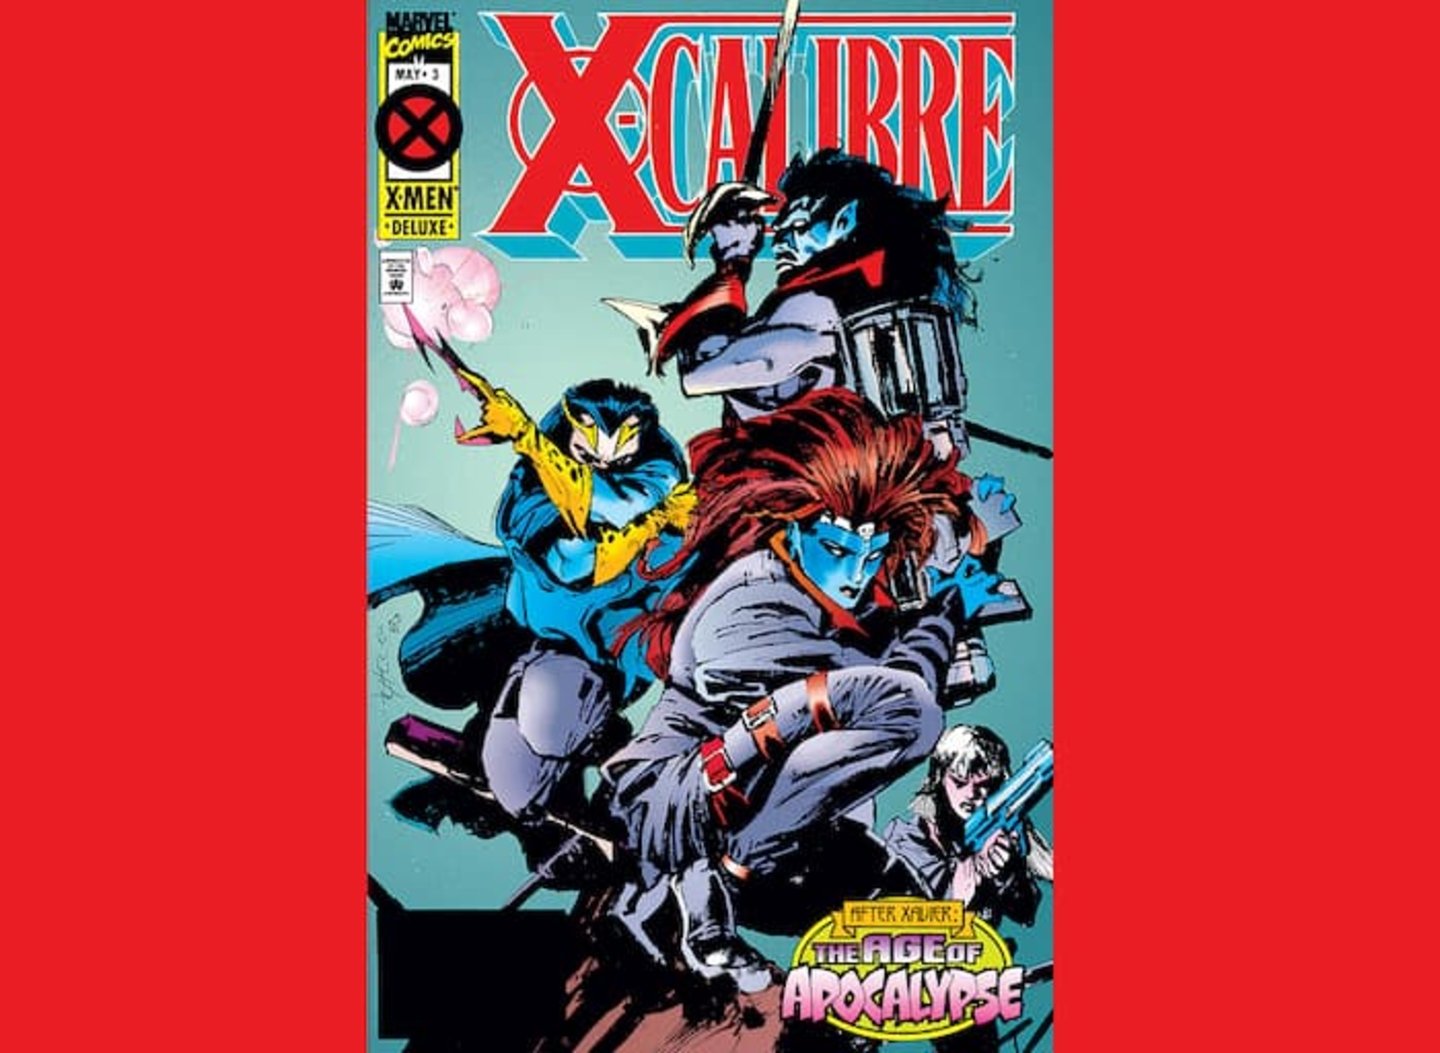 Portada del volumen #3 del cómic X-Calibre, de Marvel